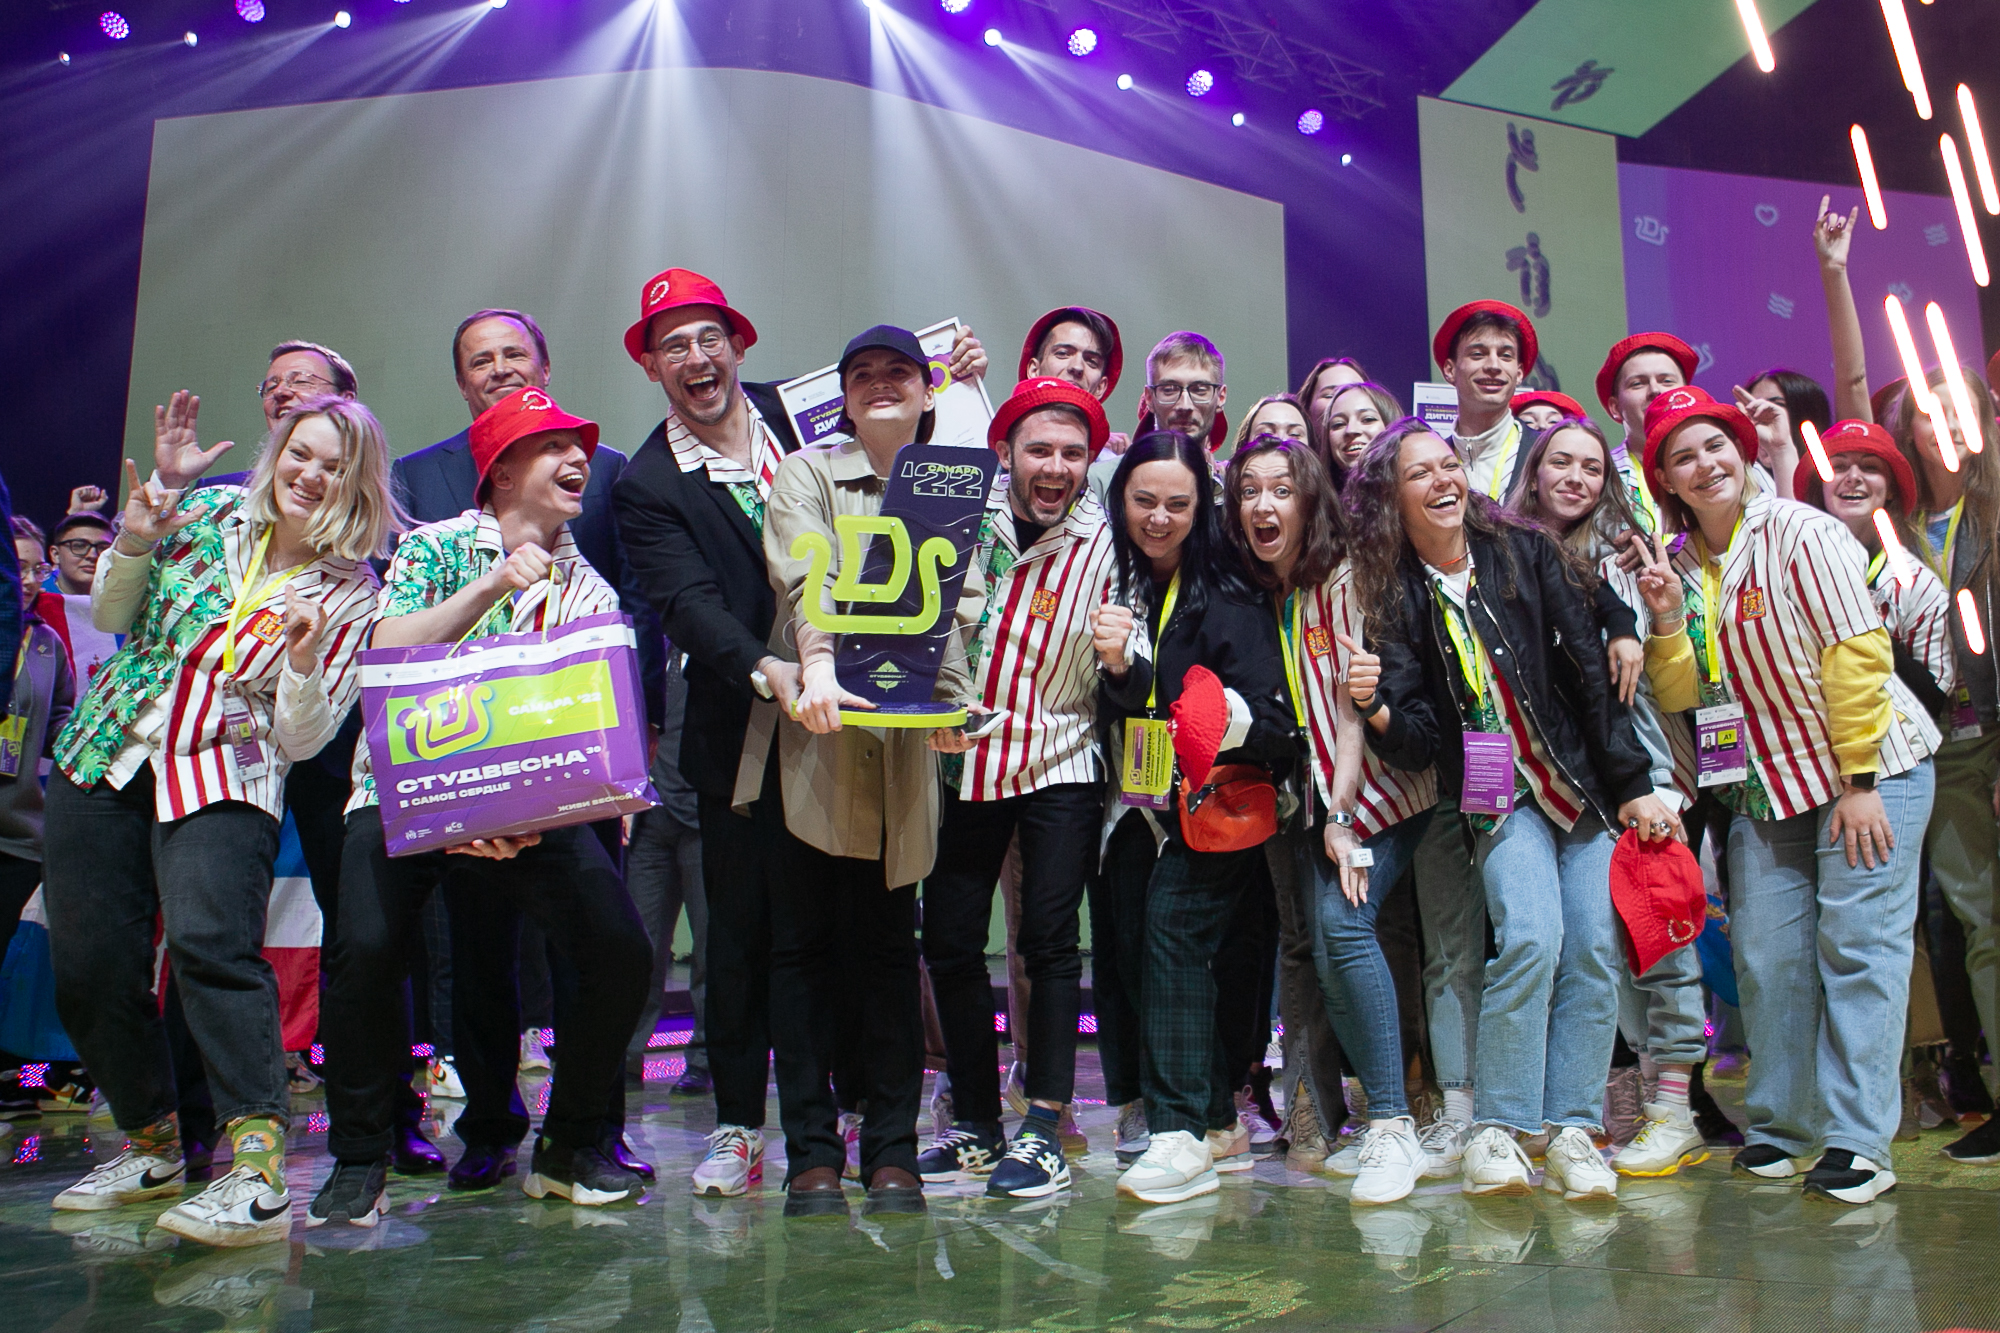 Определены победители II Национальной премии поддержки талантливой молодежи «Российская студенческая весна» среди вузов